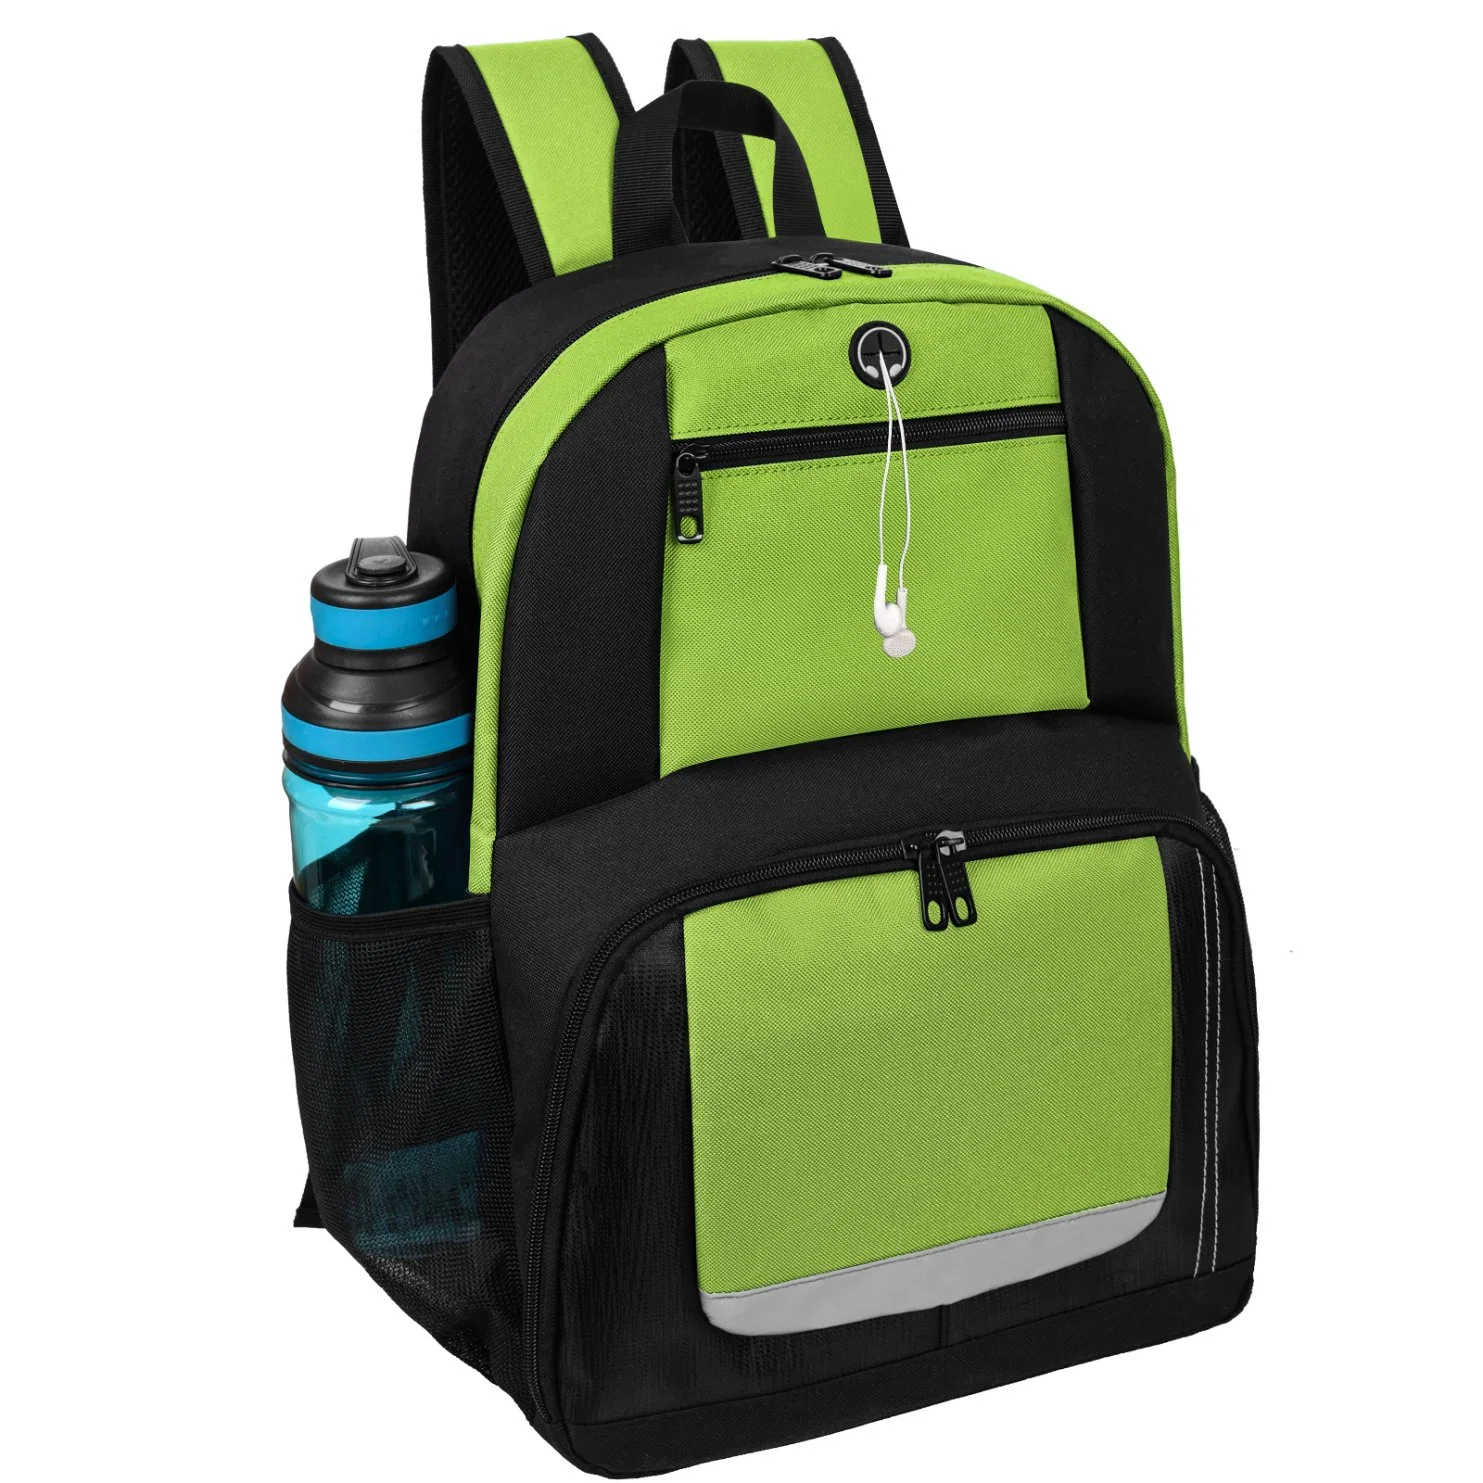 Solid Color Backpacks for Women New Large Capacity School Backpack Bag Women Waterproof Shoulder Travel Bag Ladies Ruckpack